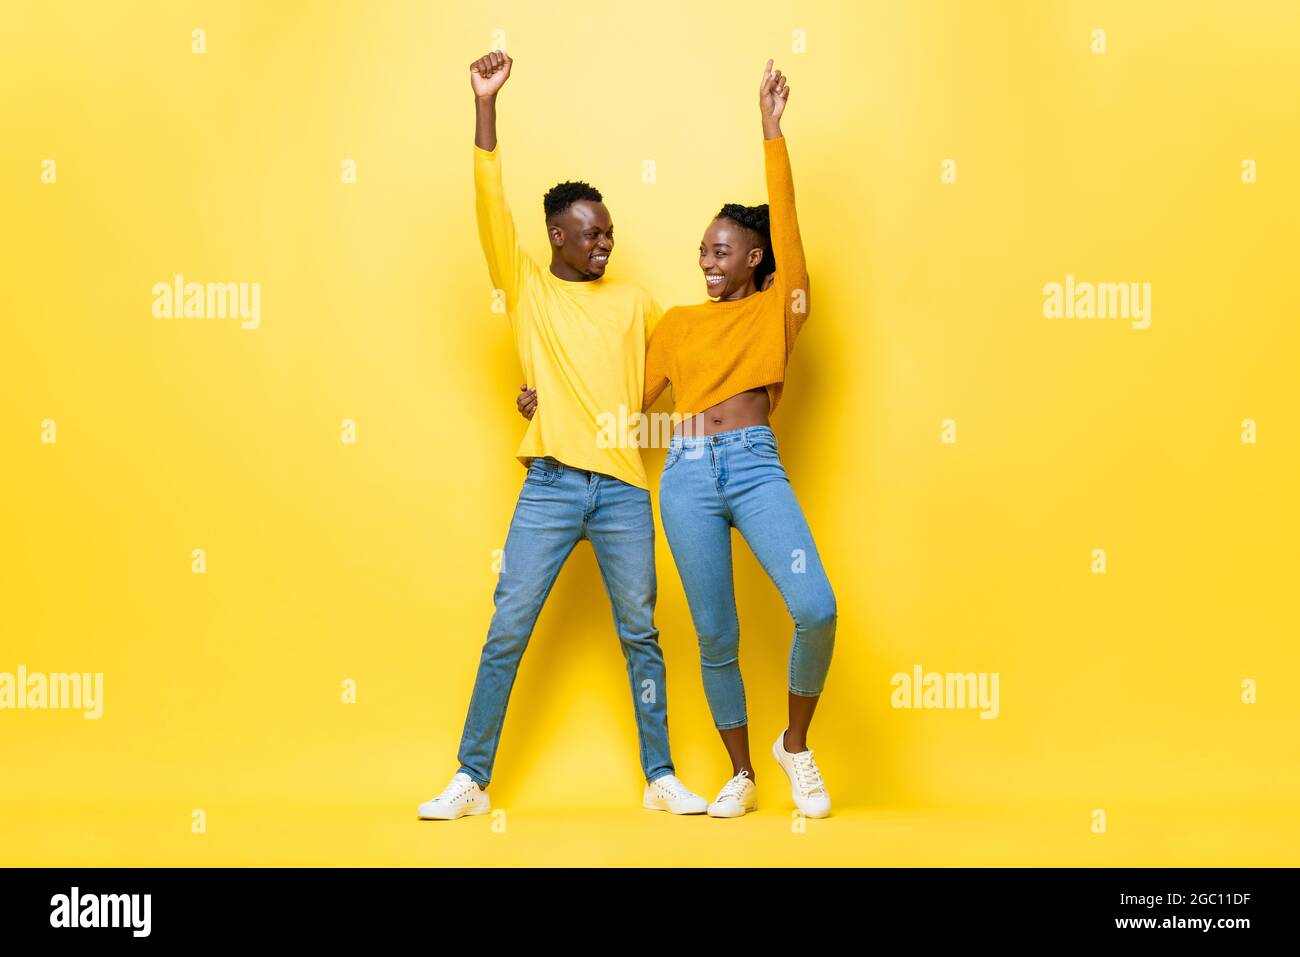 Ganzkörperportrait eines glücklichen lächelnden jungen afrikanischen Paares, das die Arme hochhebt und sich gegenseitig in einem gelben, isolierten Studiohintergrund hält und schaut Stockfoto